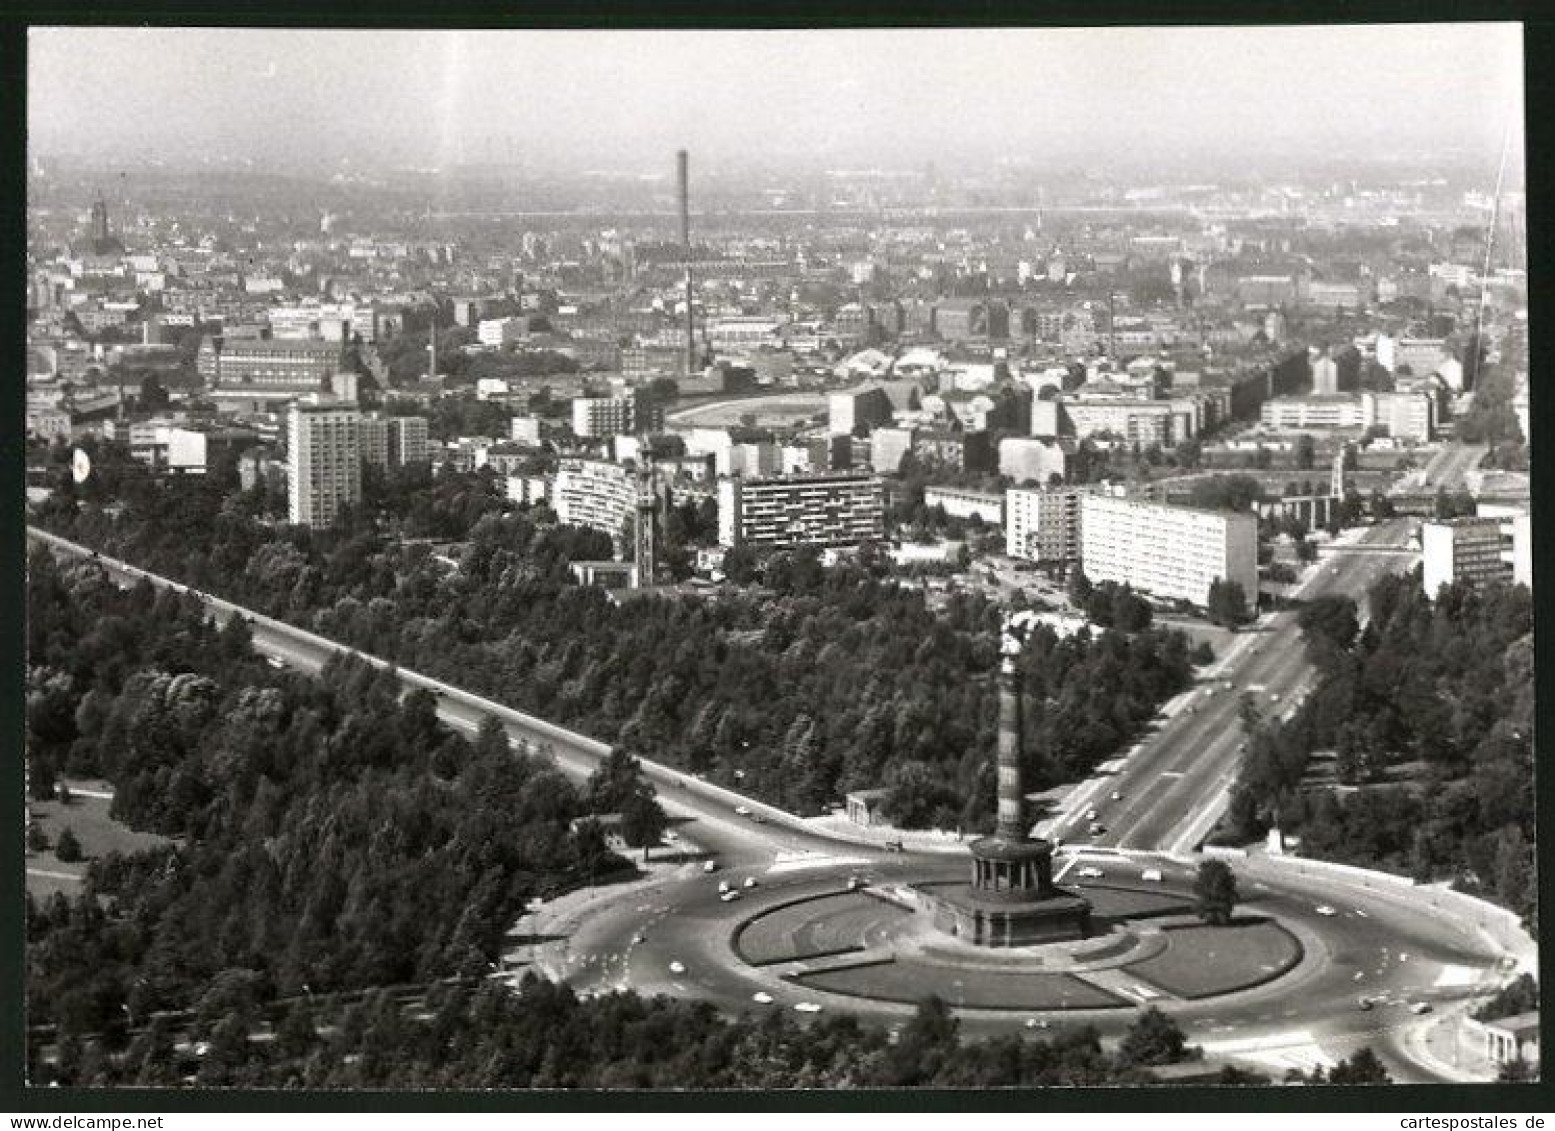 Fotografie Unbekannter Fotograf, Ansicht Berlin, Luftaufnahme Der Siegessäule & Hansa-Viertel 1964  - Orte